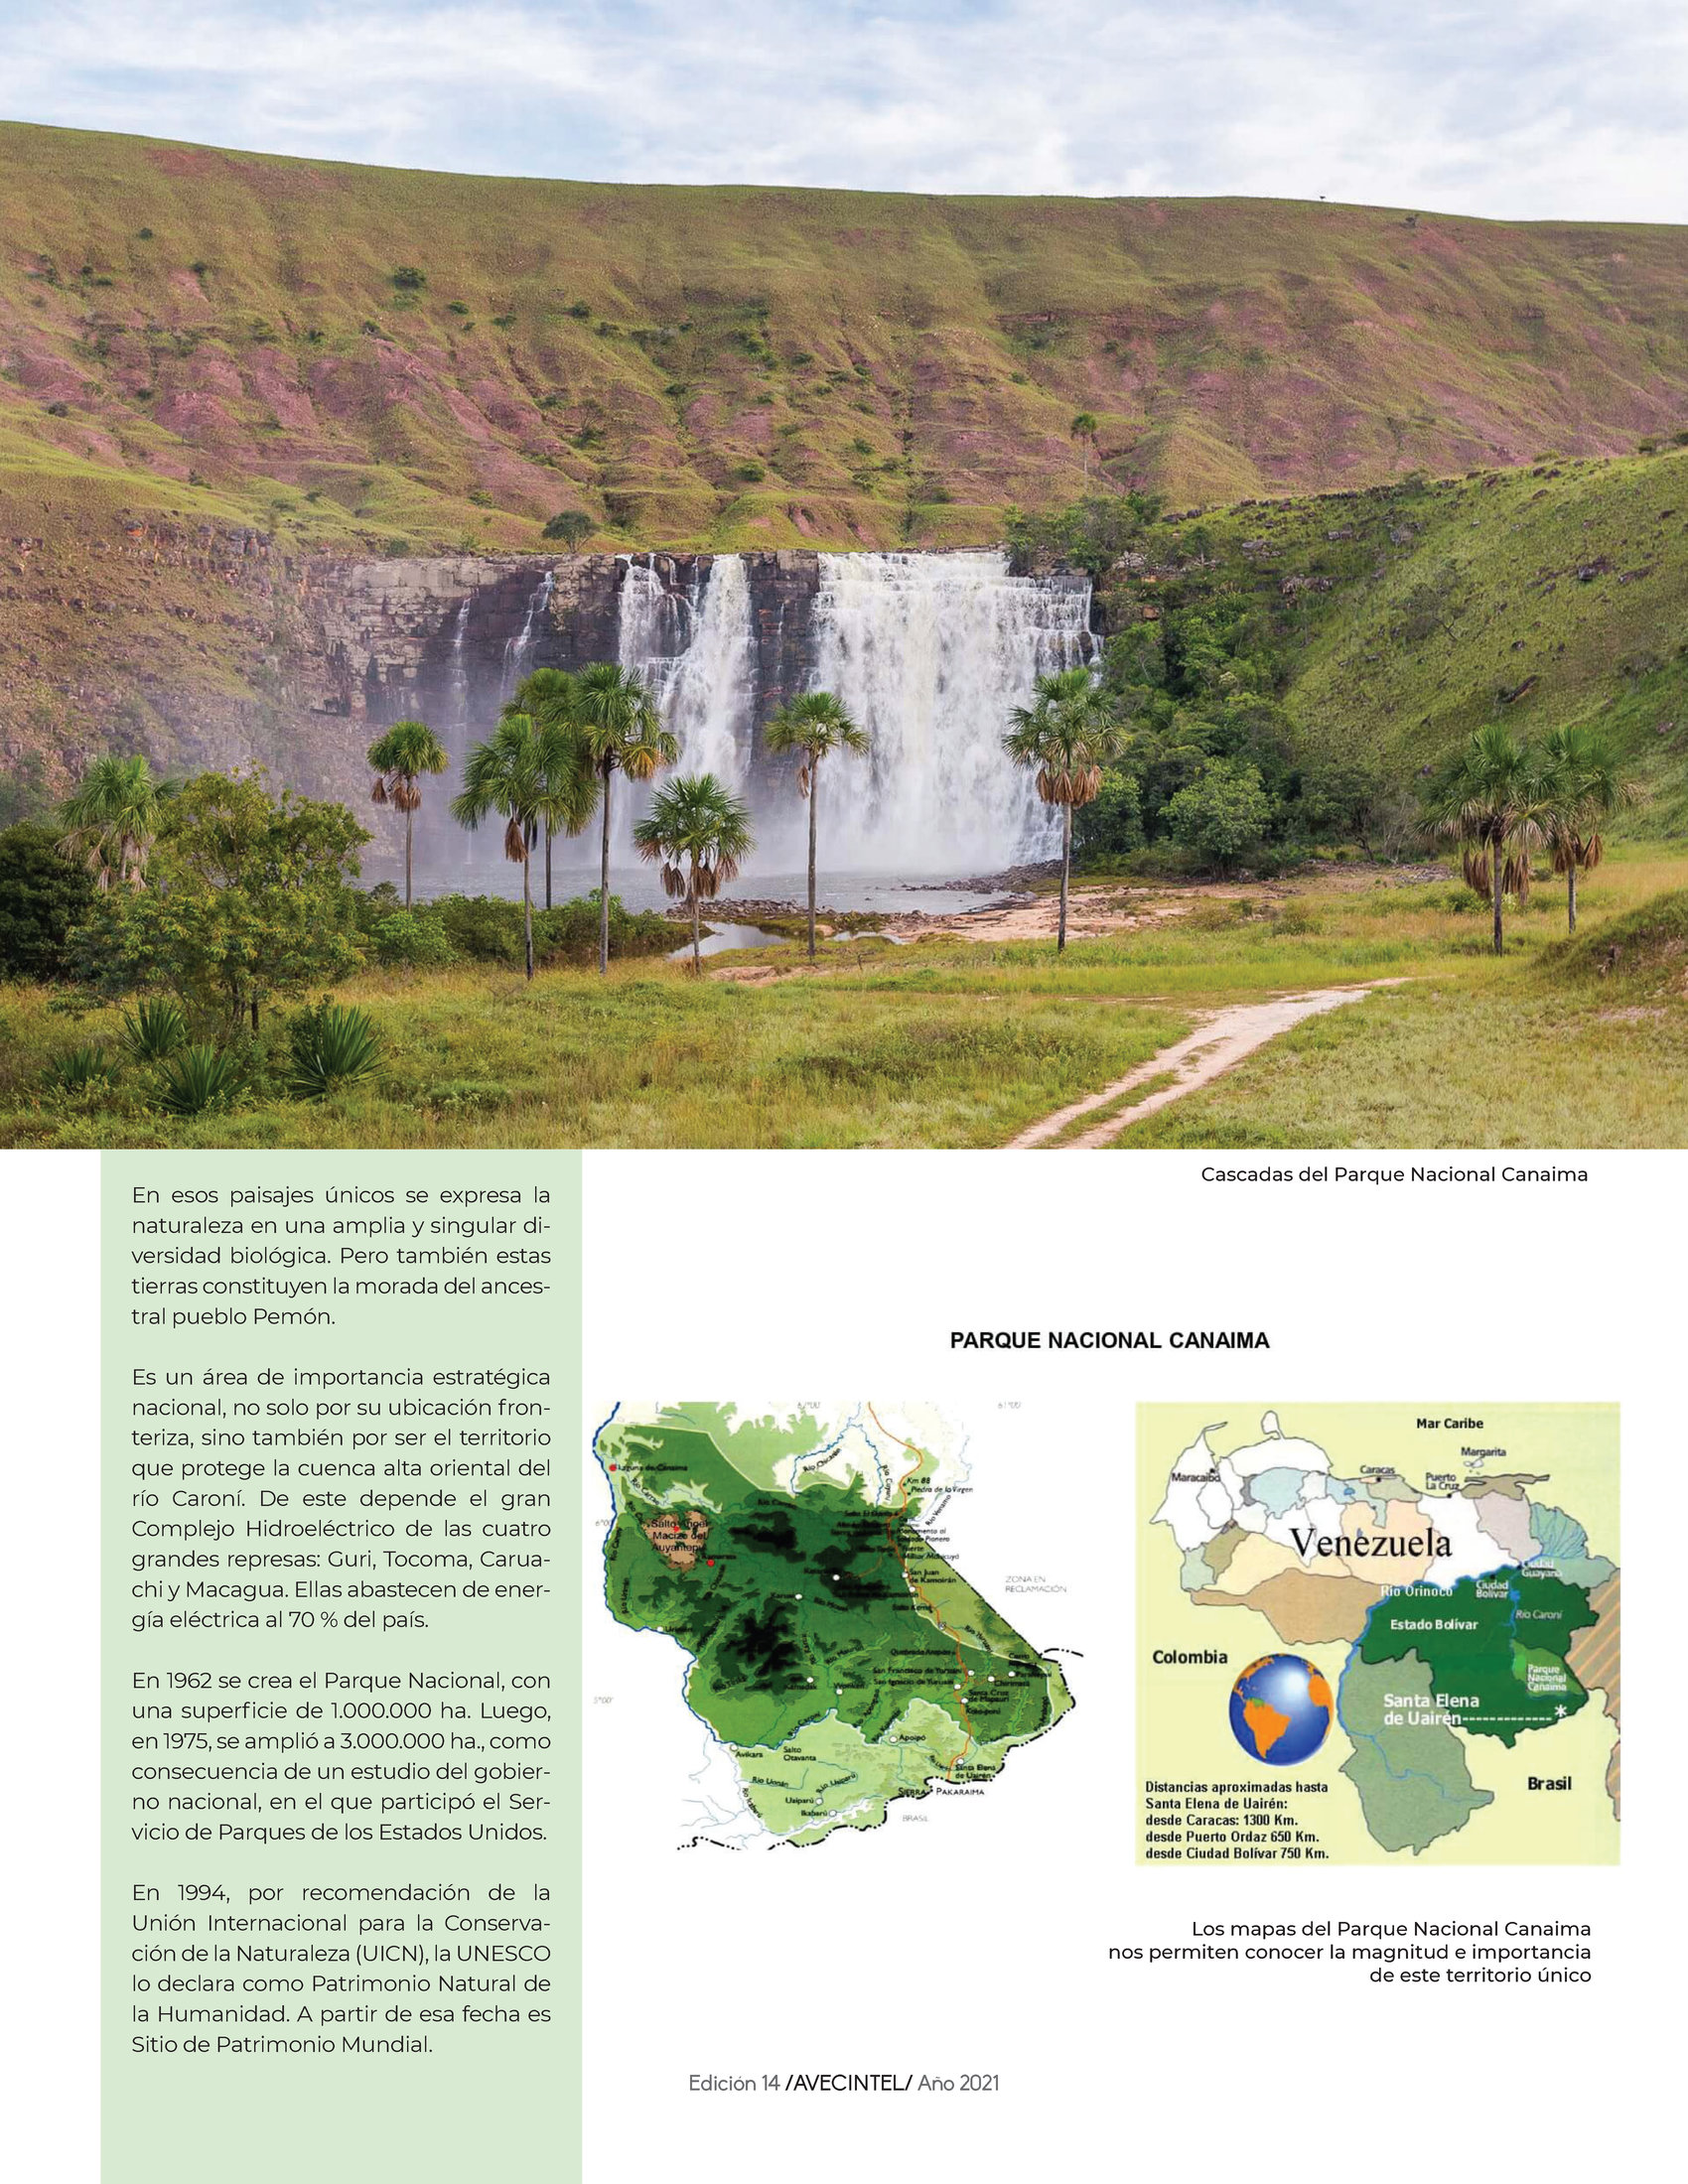 78-REV Jesus Morales Parque Nacional Canaima Patrimonio Mundial